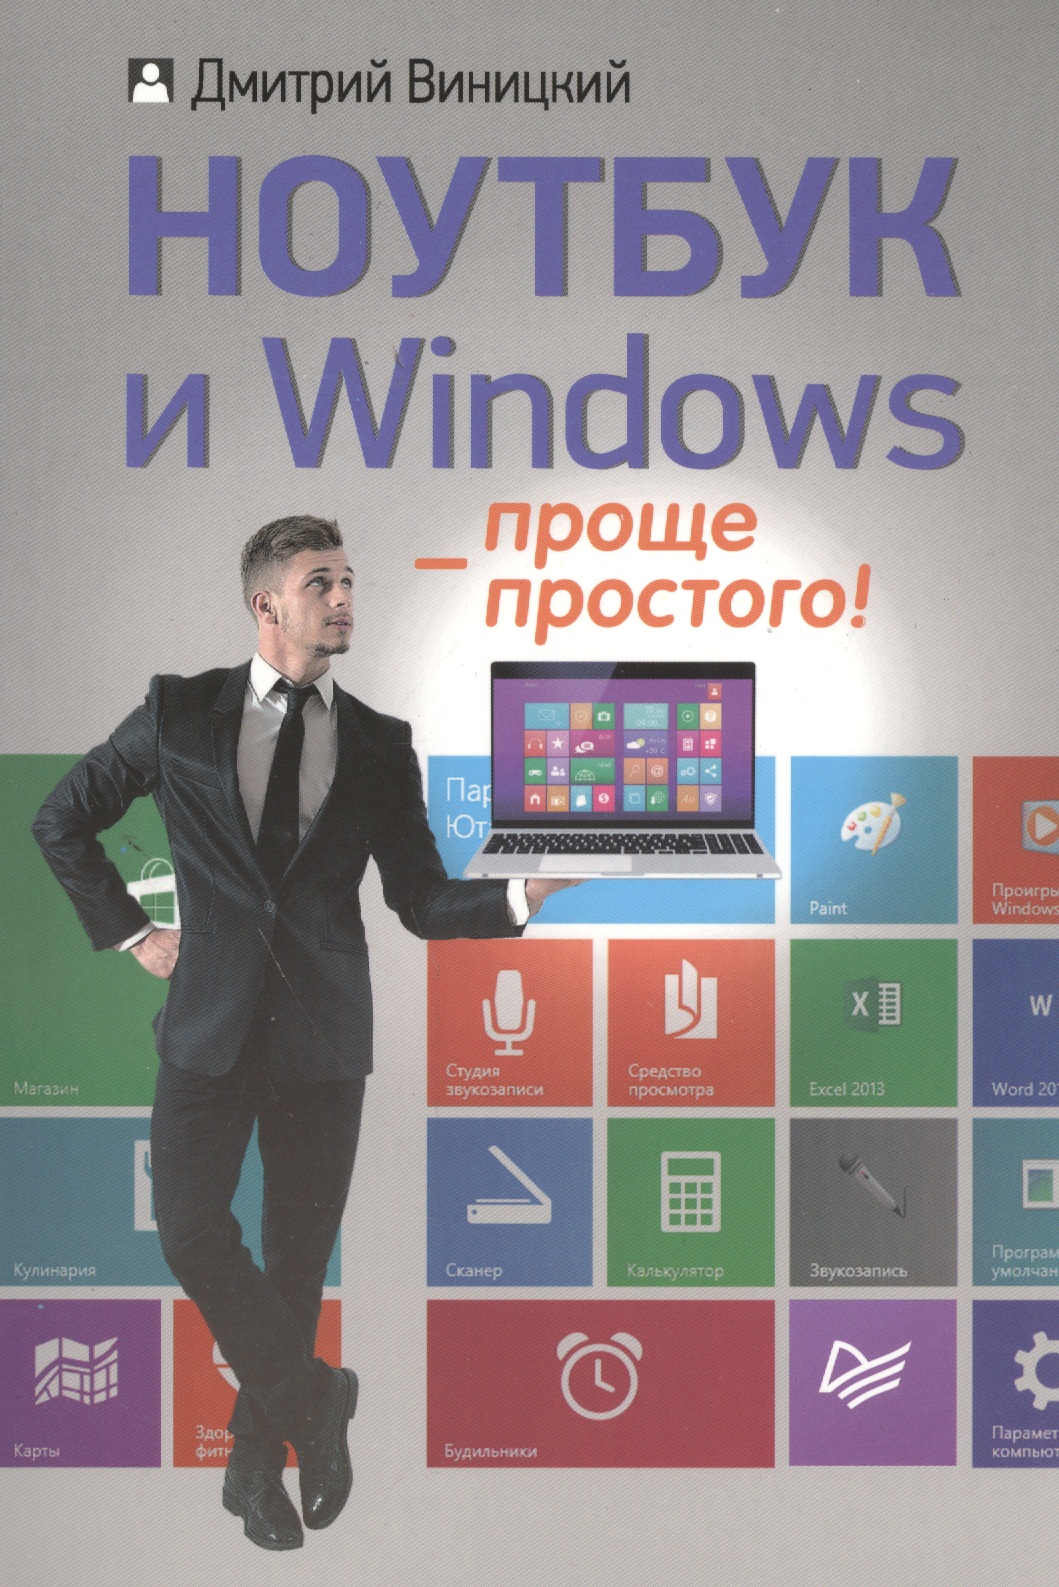 Виницкий Дмитрий Мирославович Ноутбук и Windows - проще простого!